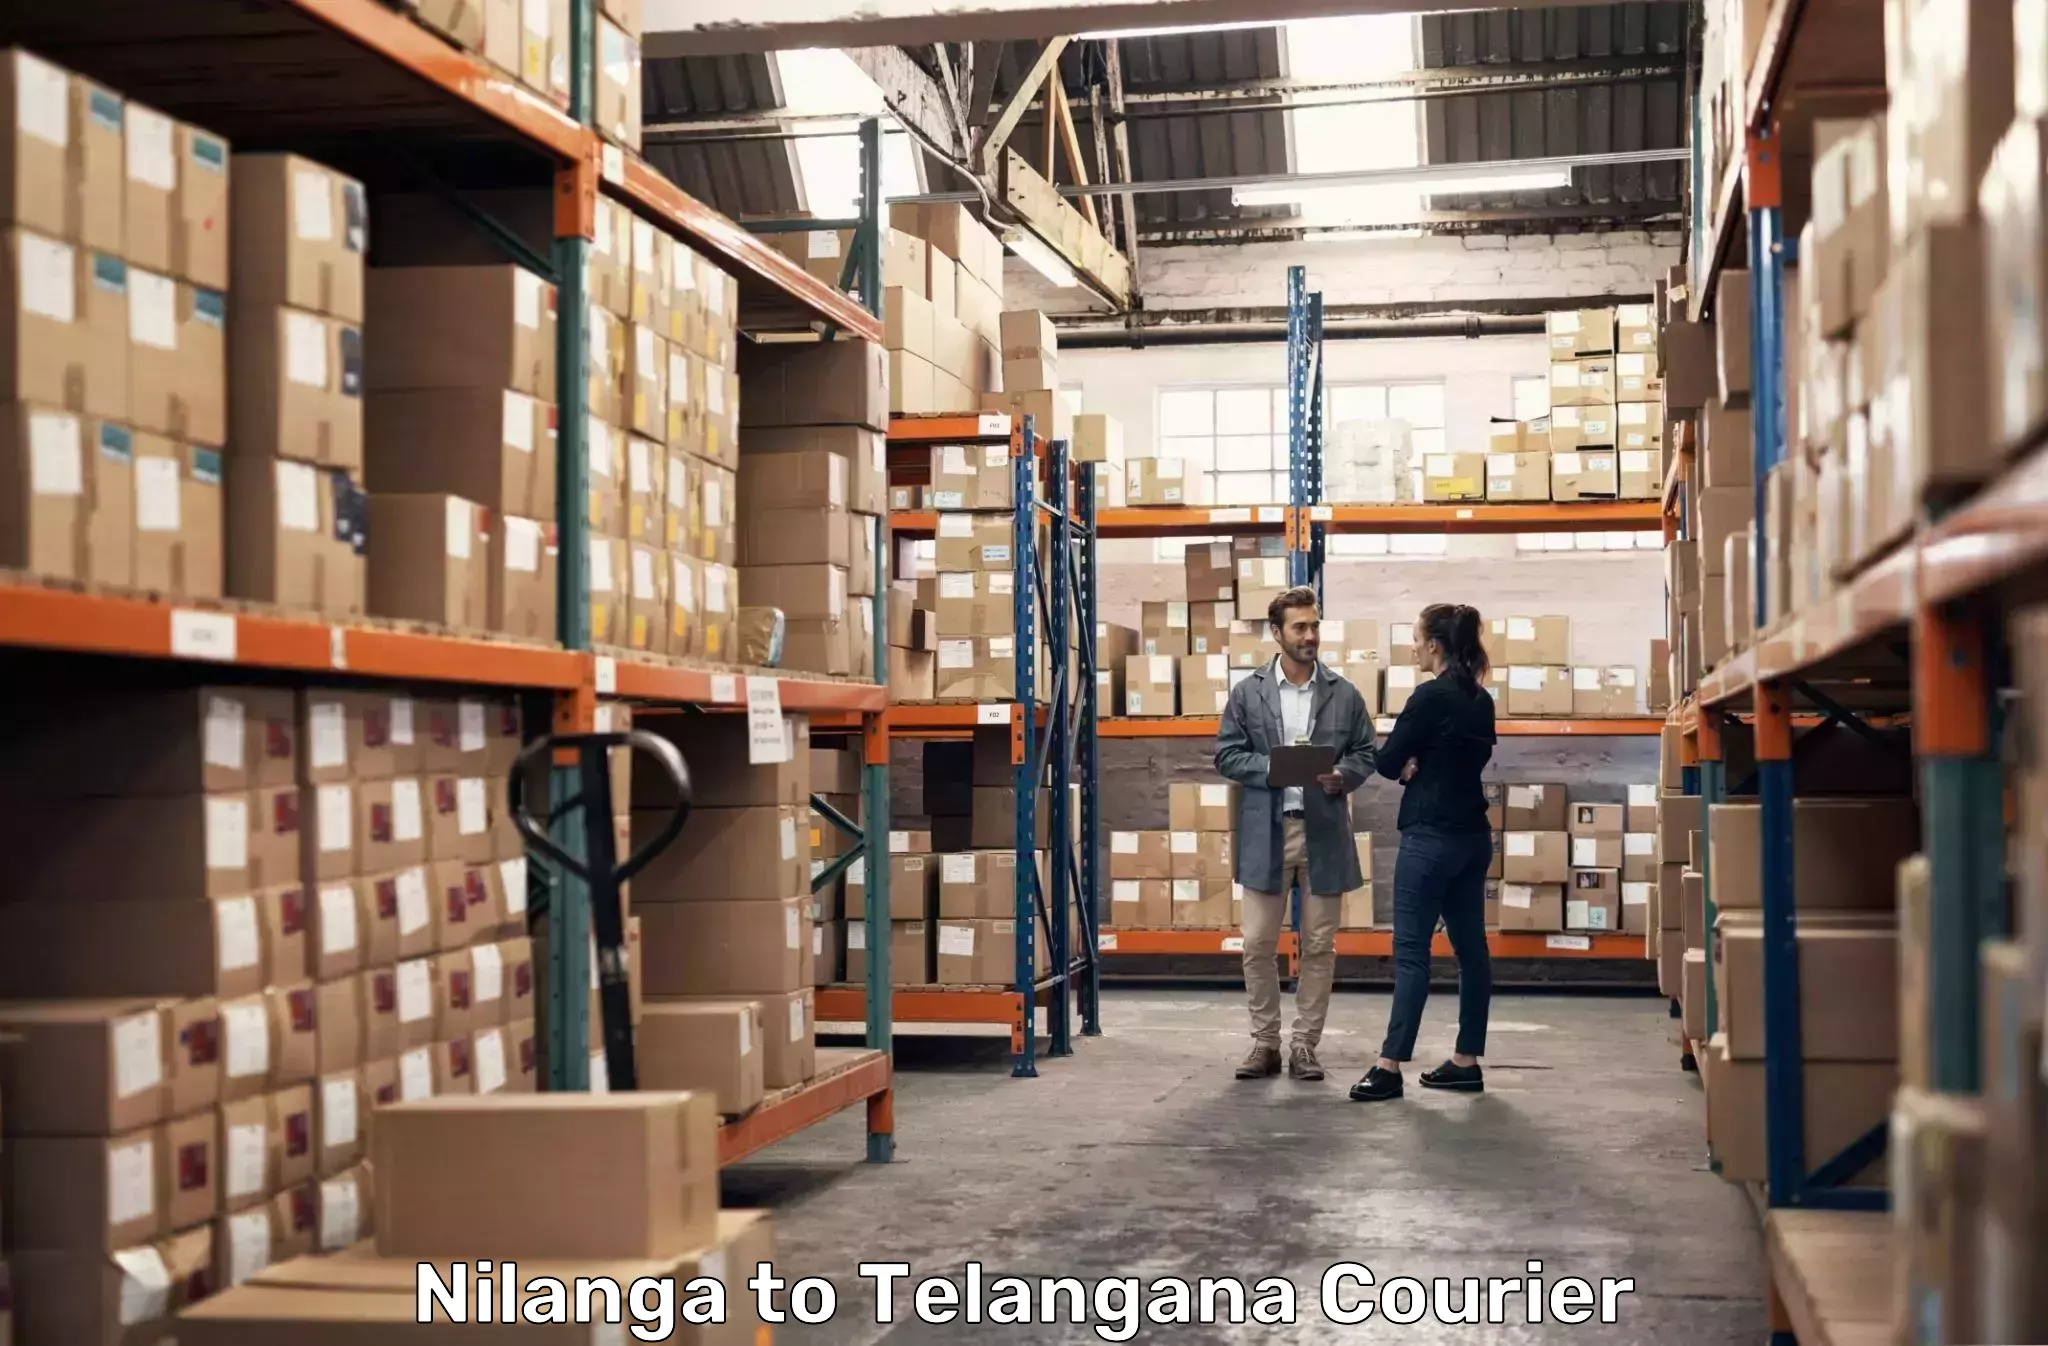 Regular parcel service Nilanga to Secunderabad